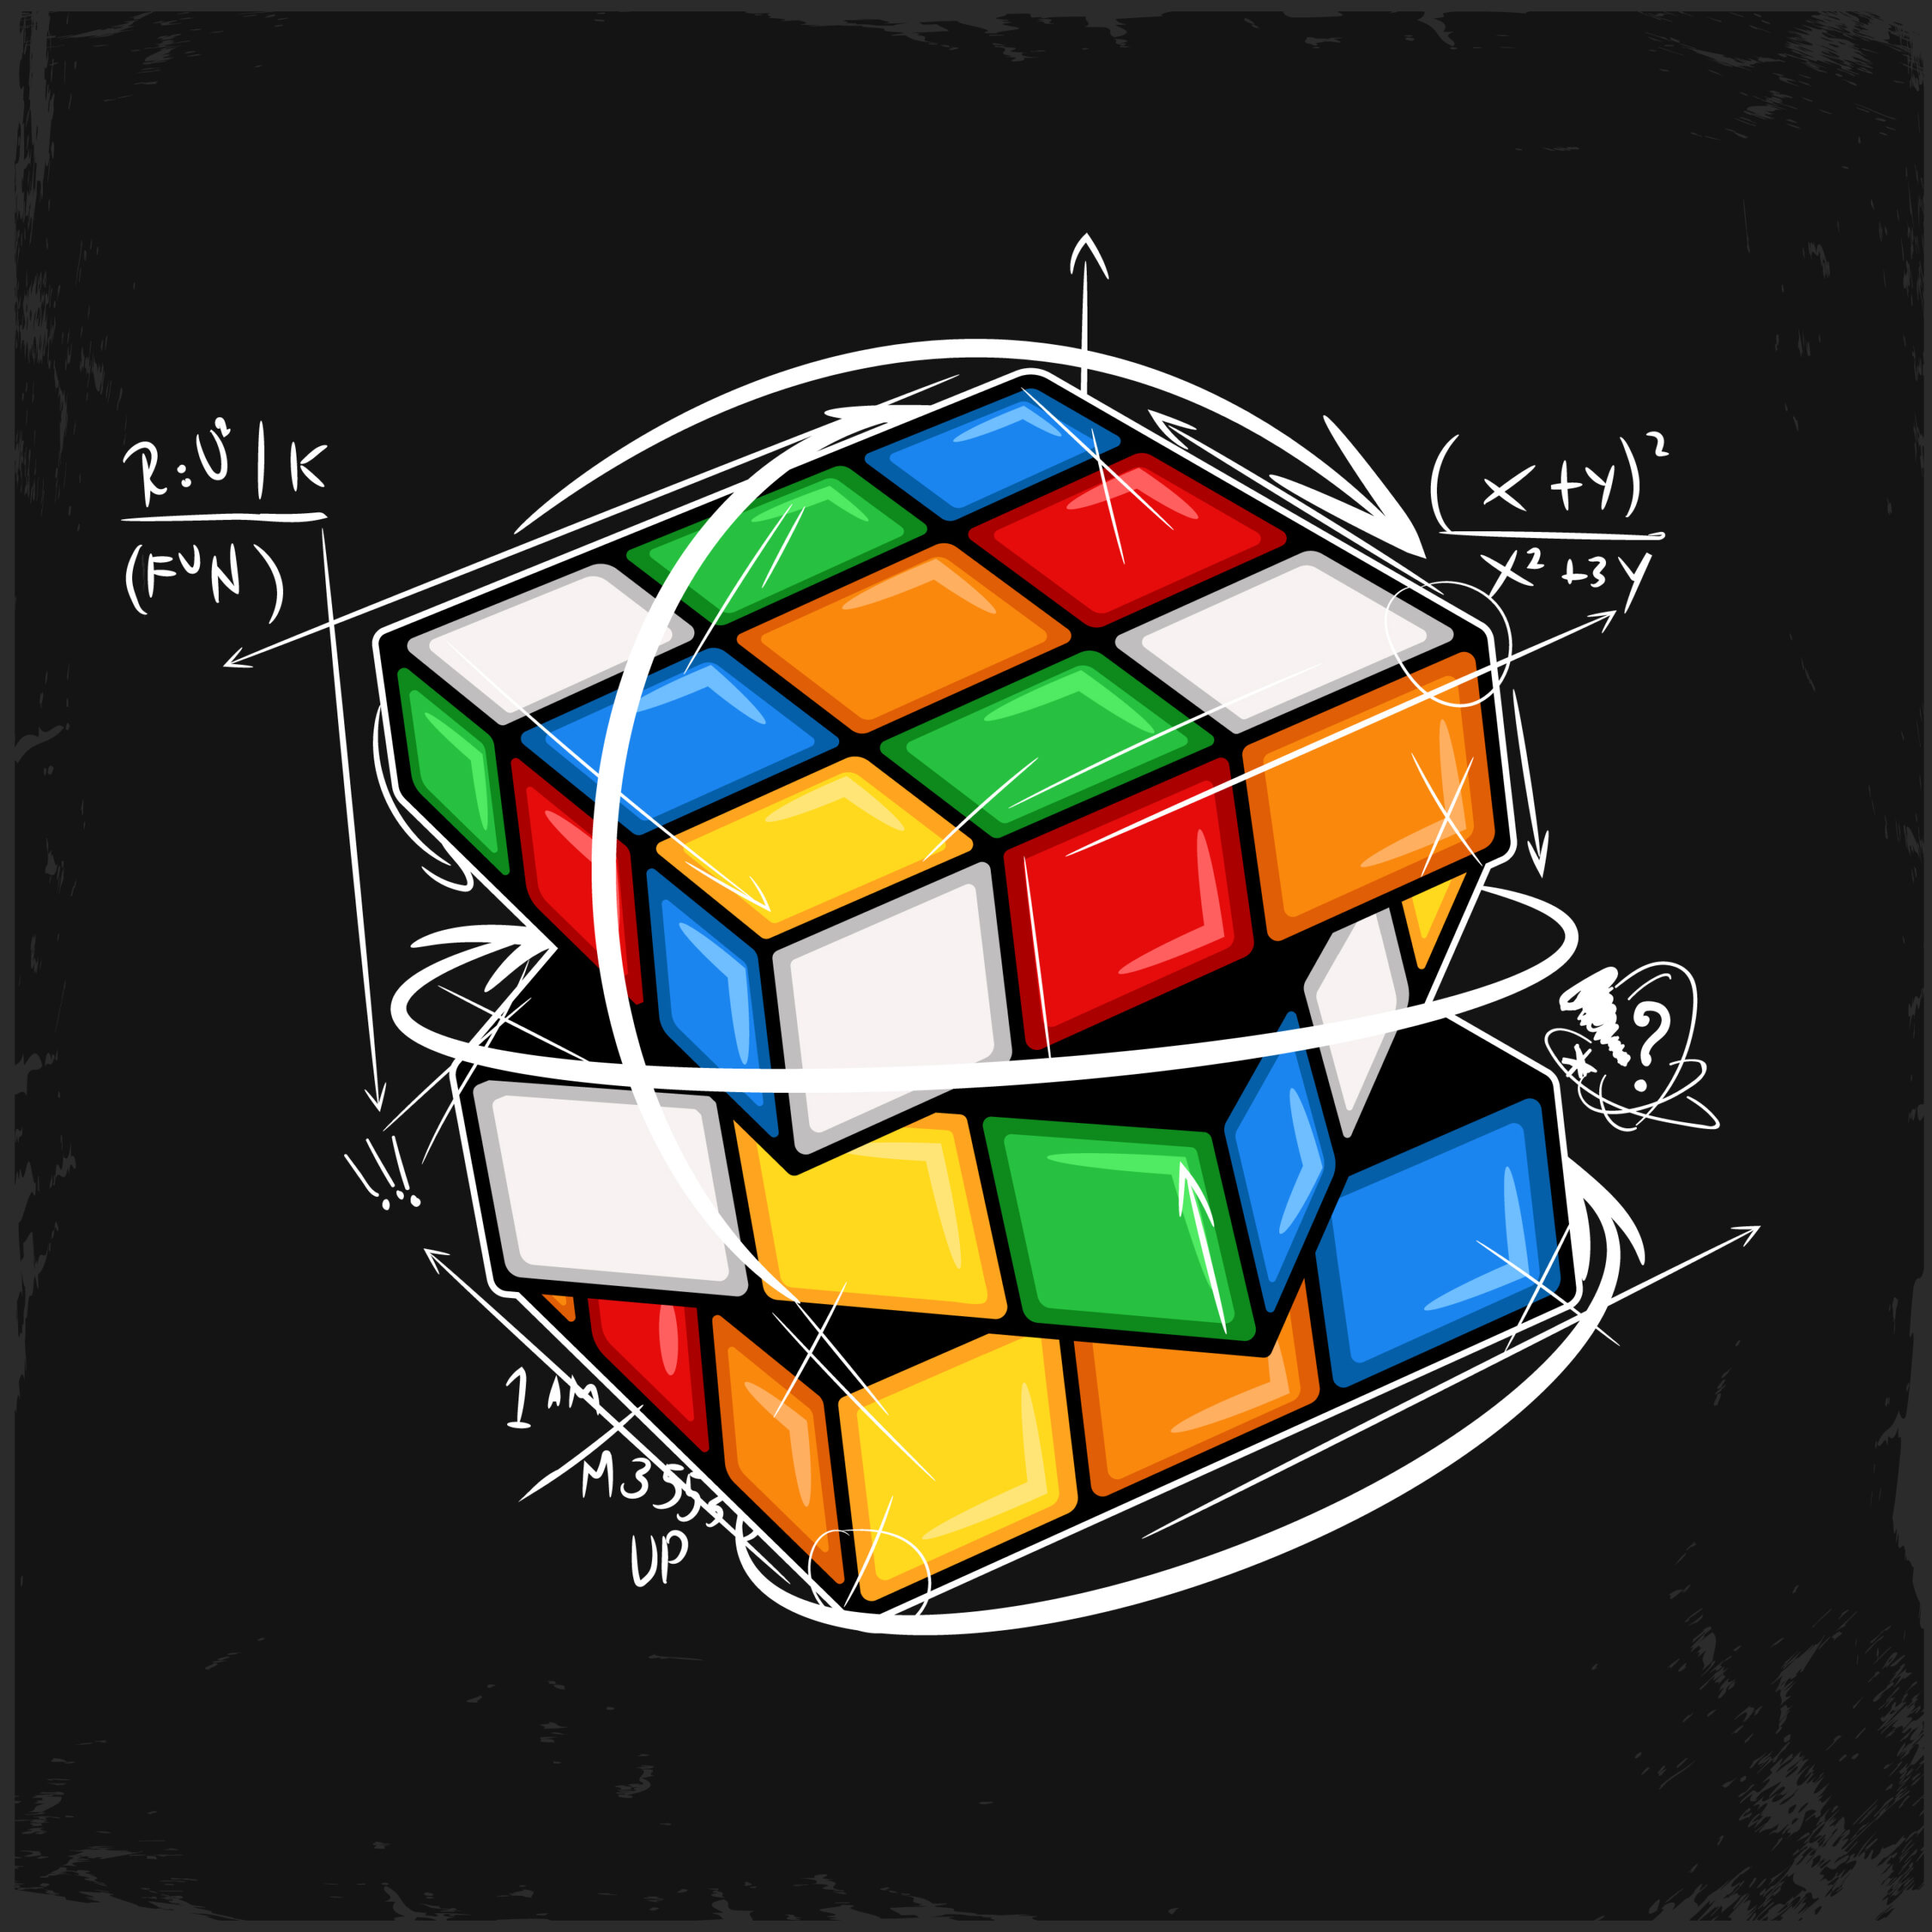 Conheça o maior cubo mágico do mundo - Blog ONCUBE